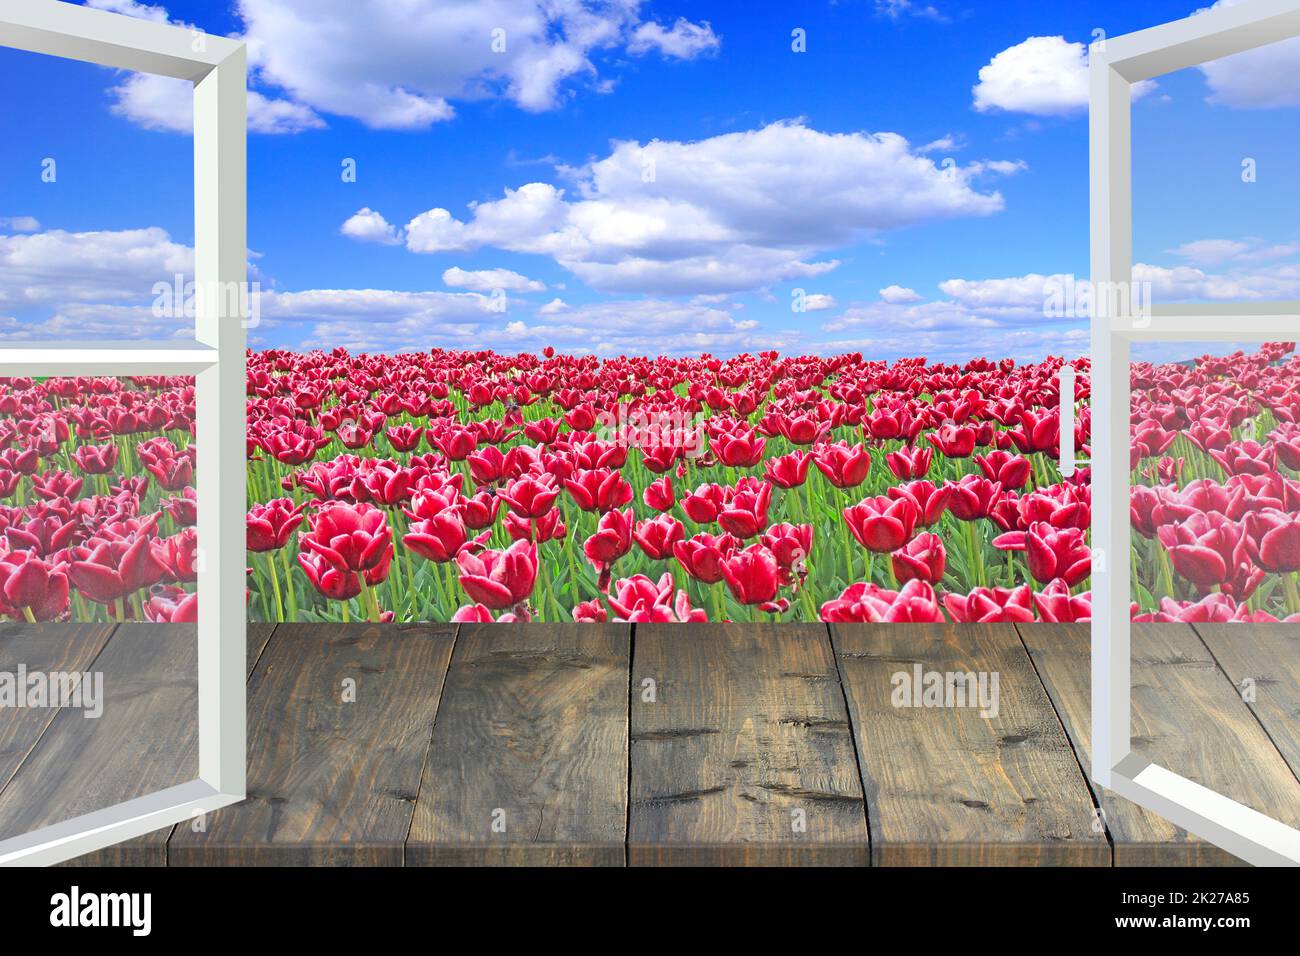 Fenêtre ouverte donnant sur un champ de tulipes rouges. Maison jardin Banque D'Images